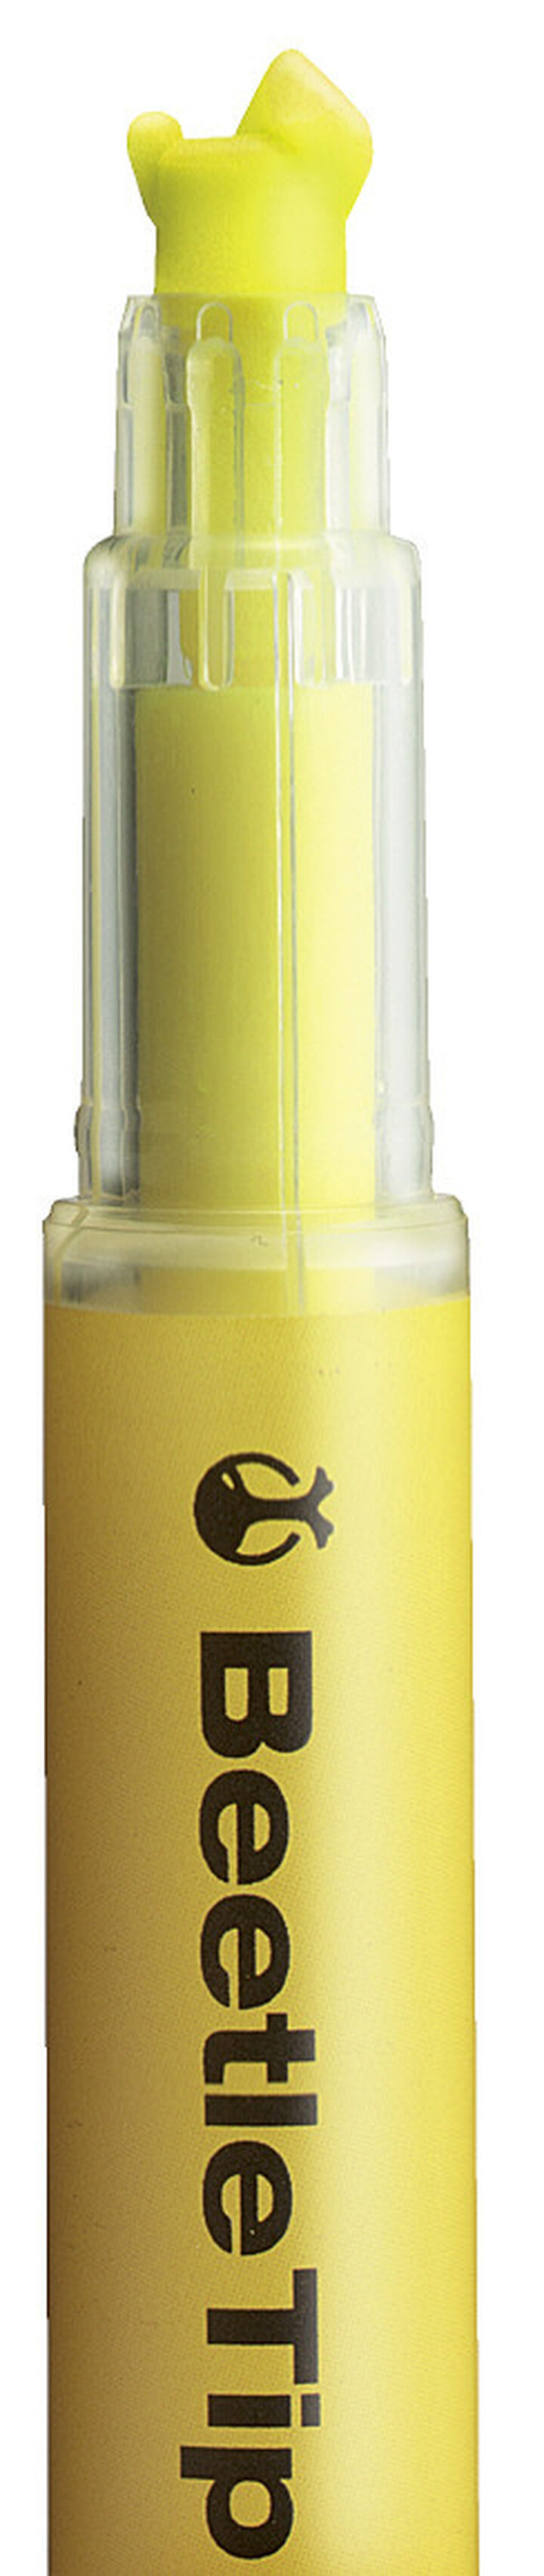 Beetle Tip 3 Way Marking Pen Yellow,Yellow, medium image number 1